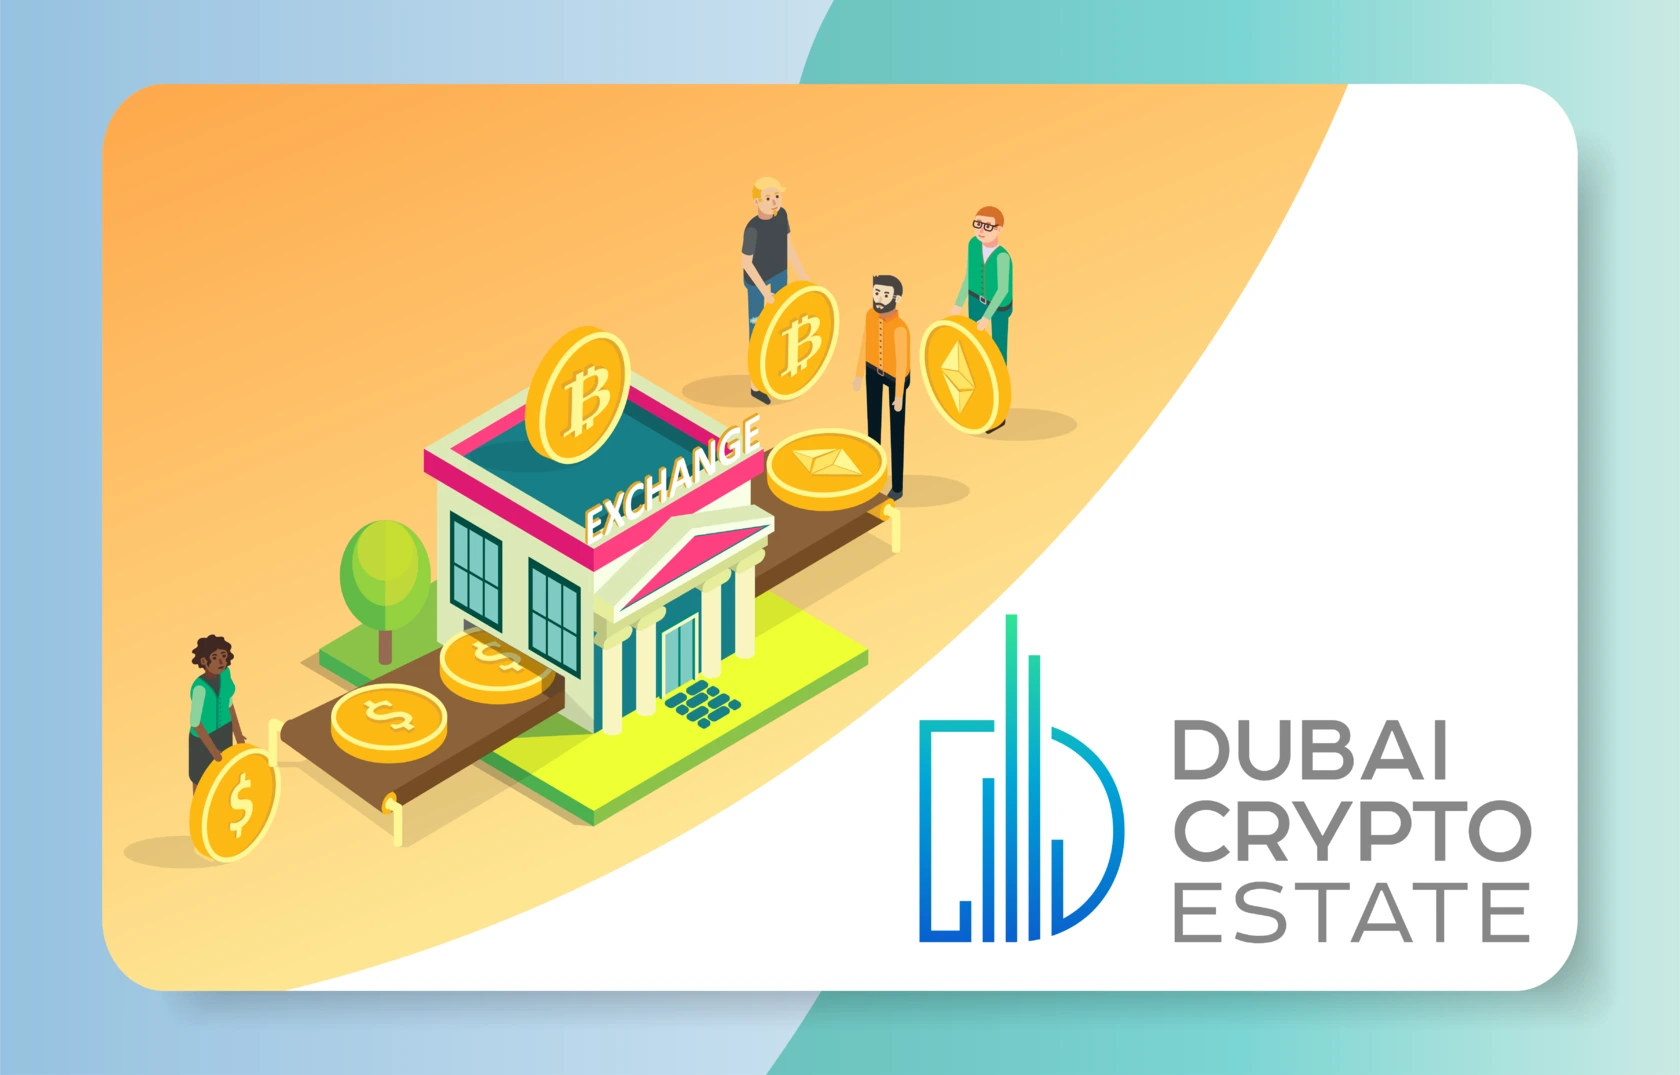 Обмен криптовалют в Дубае. Поменять Bitcoin, Ethereum, USDT на дирхамы AED, выписать менеджер чек